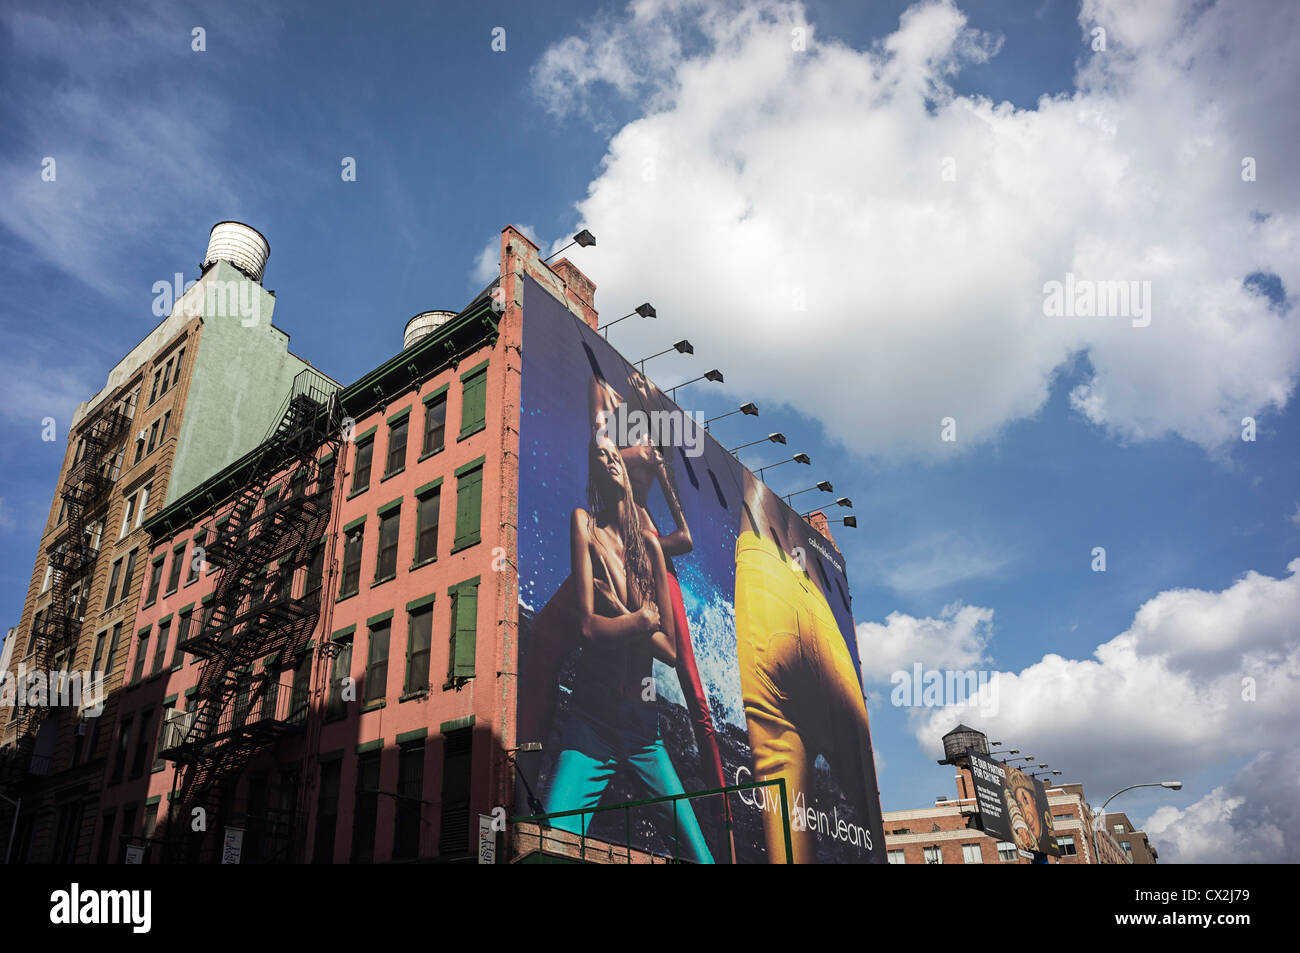 Kalvin Klein billboard in Manhattan, New York, USA, Stock Photo